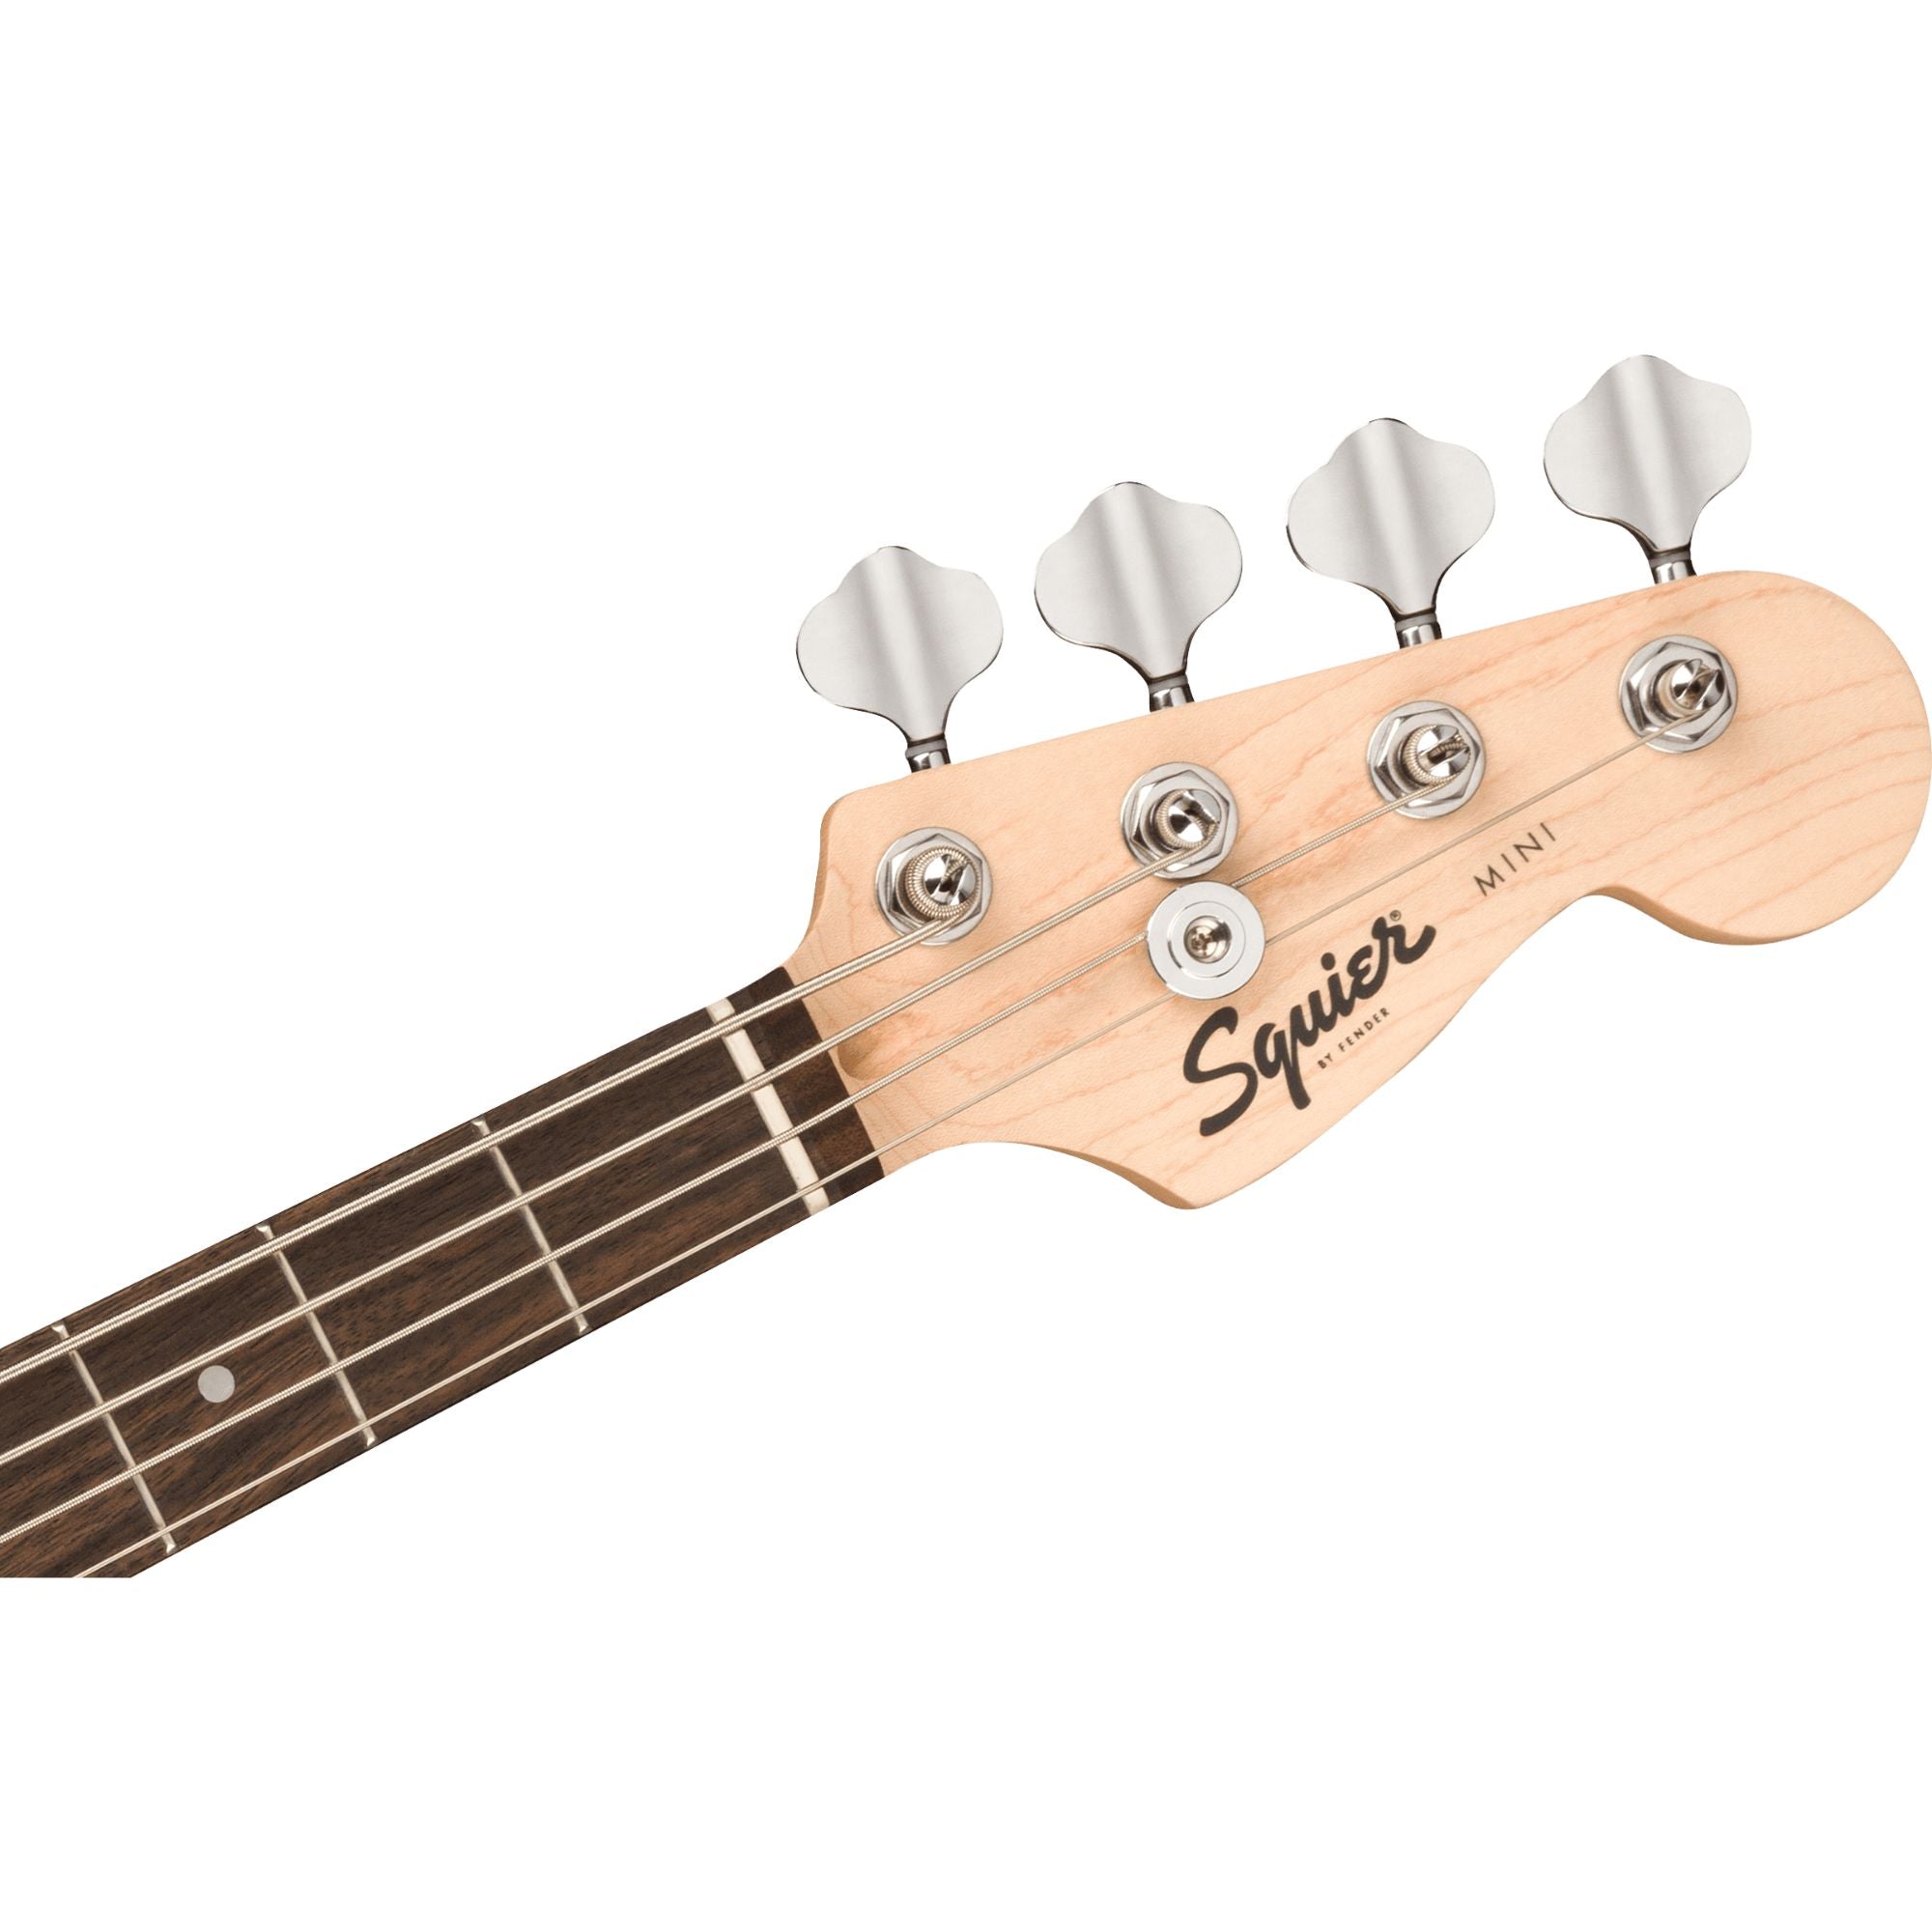 Squier Mini Precision Bass, Black